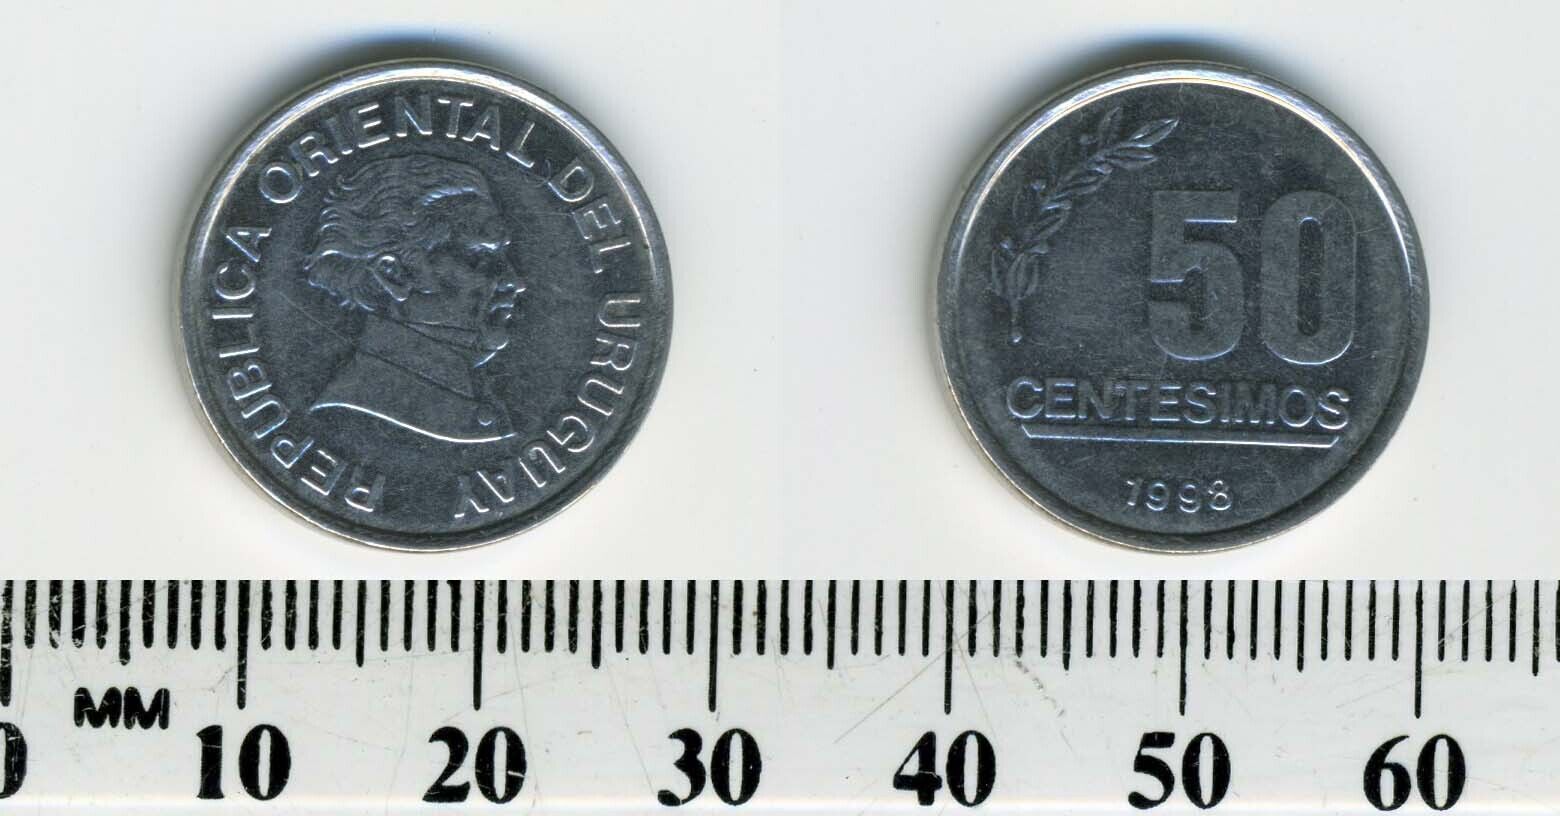 Uruguay 1998 - 50 Centesimos Stainless Steel Coin - Artigas Head